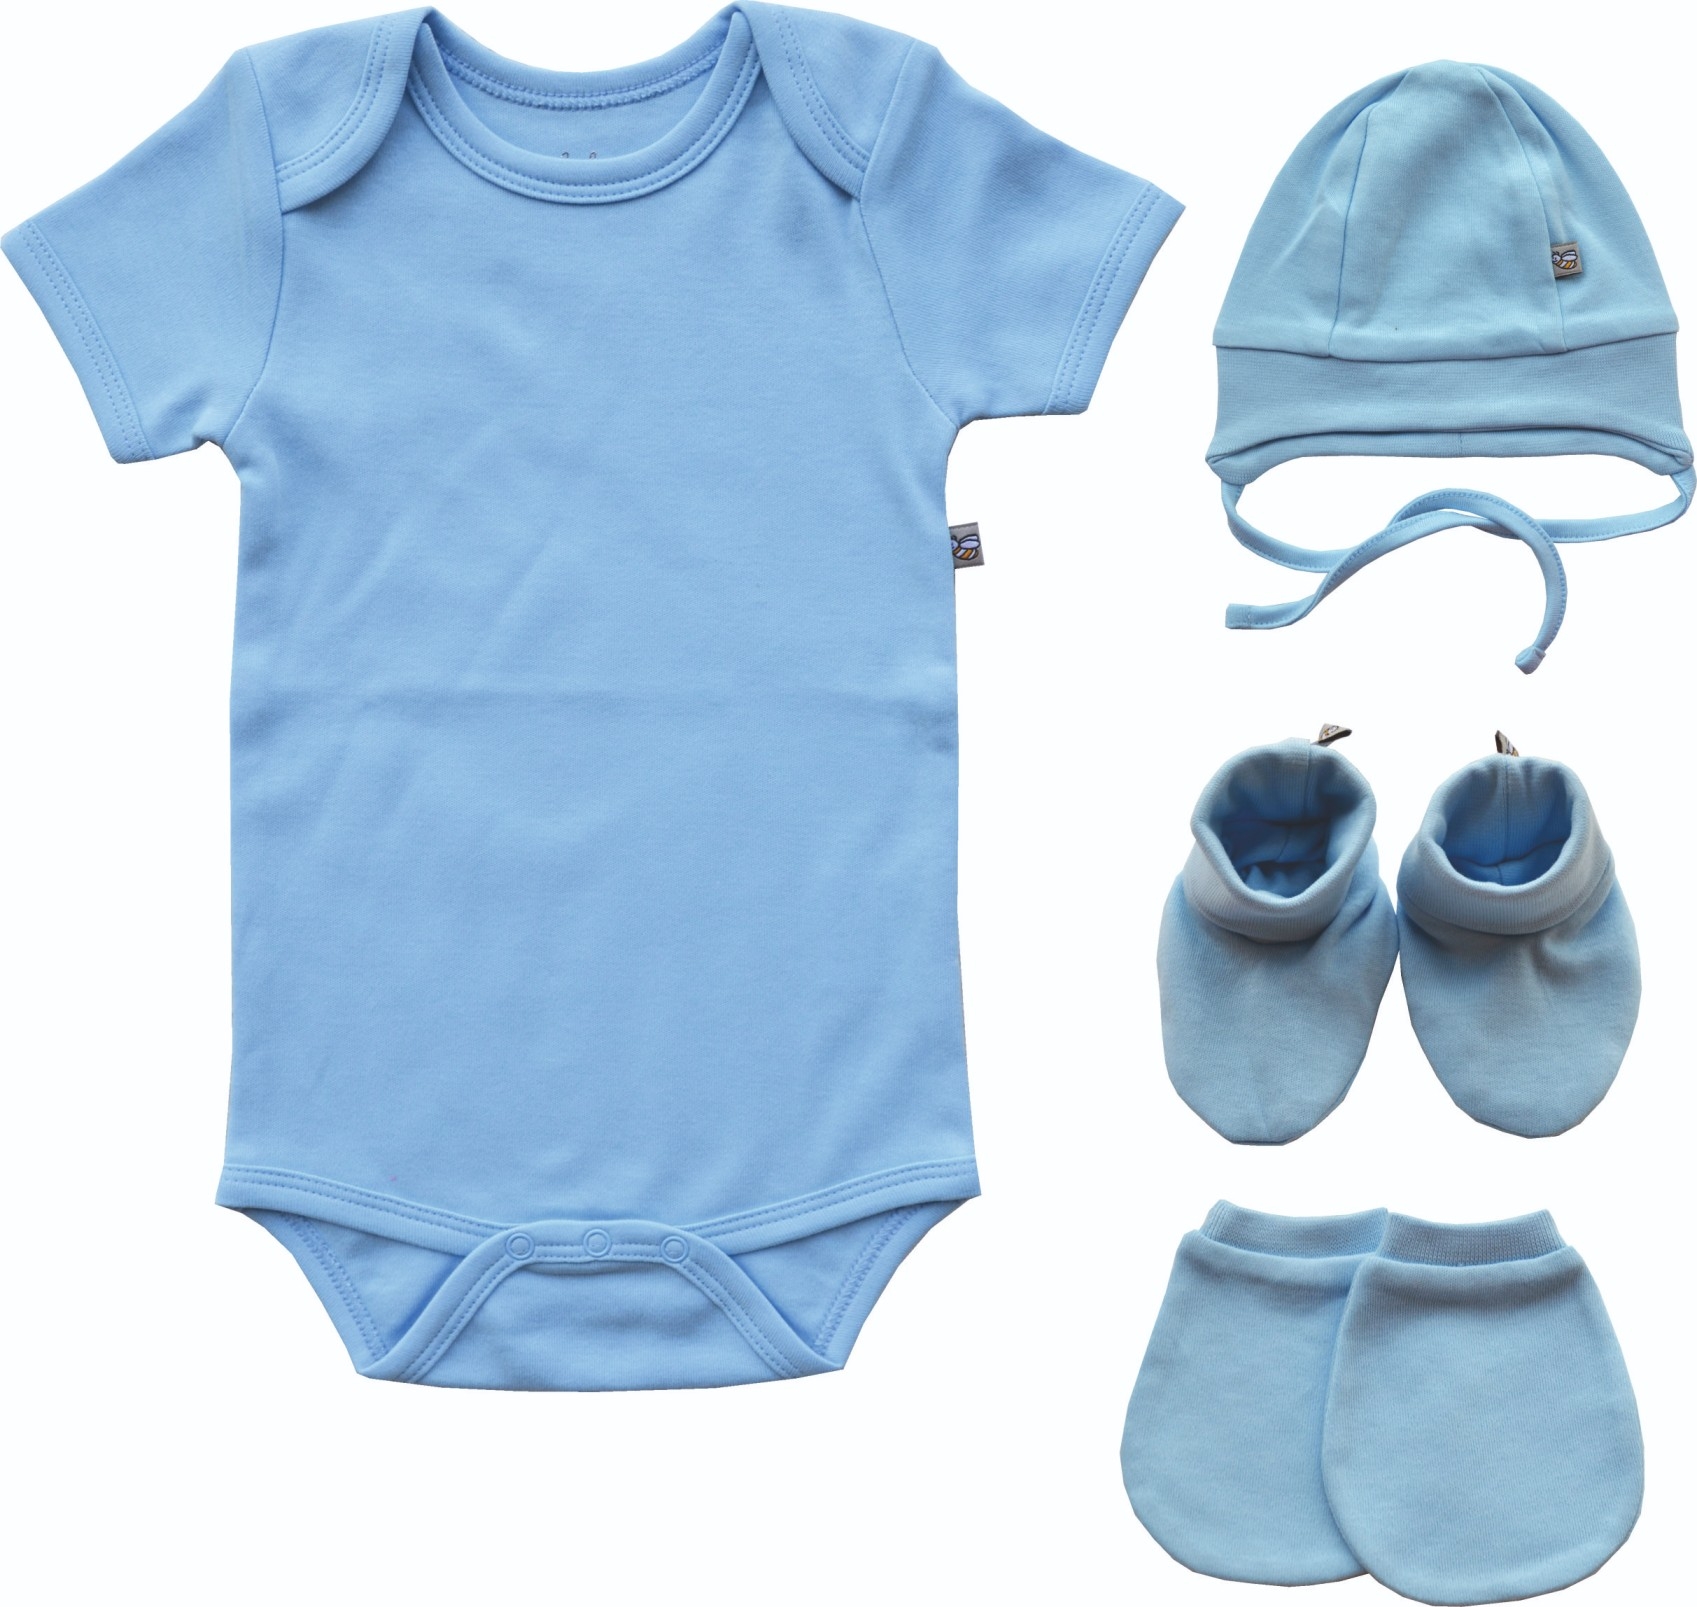 Blue Baby Romper/Onesie+Blue Cap+Bootie Mitten Set (100% Cotton)